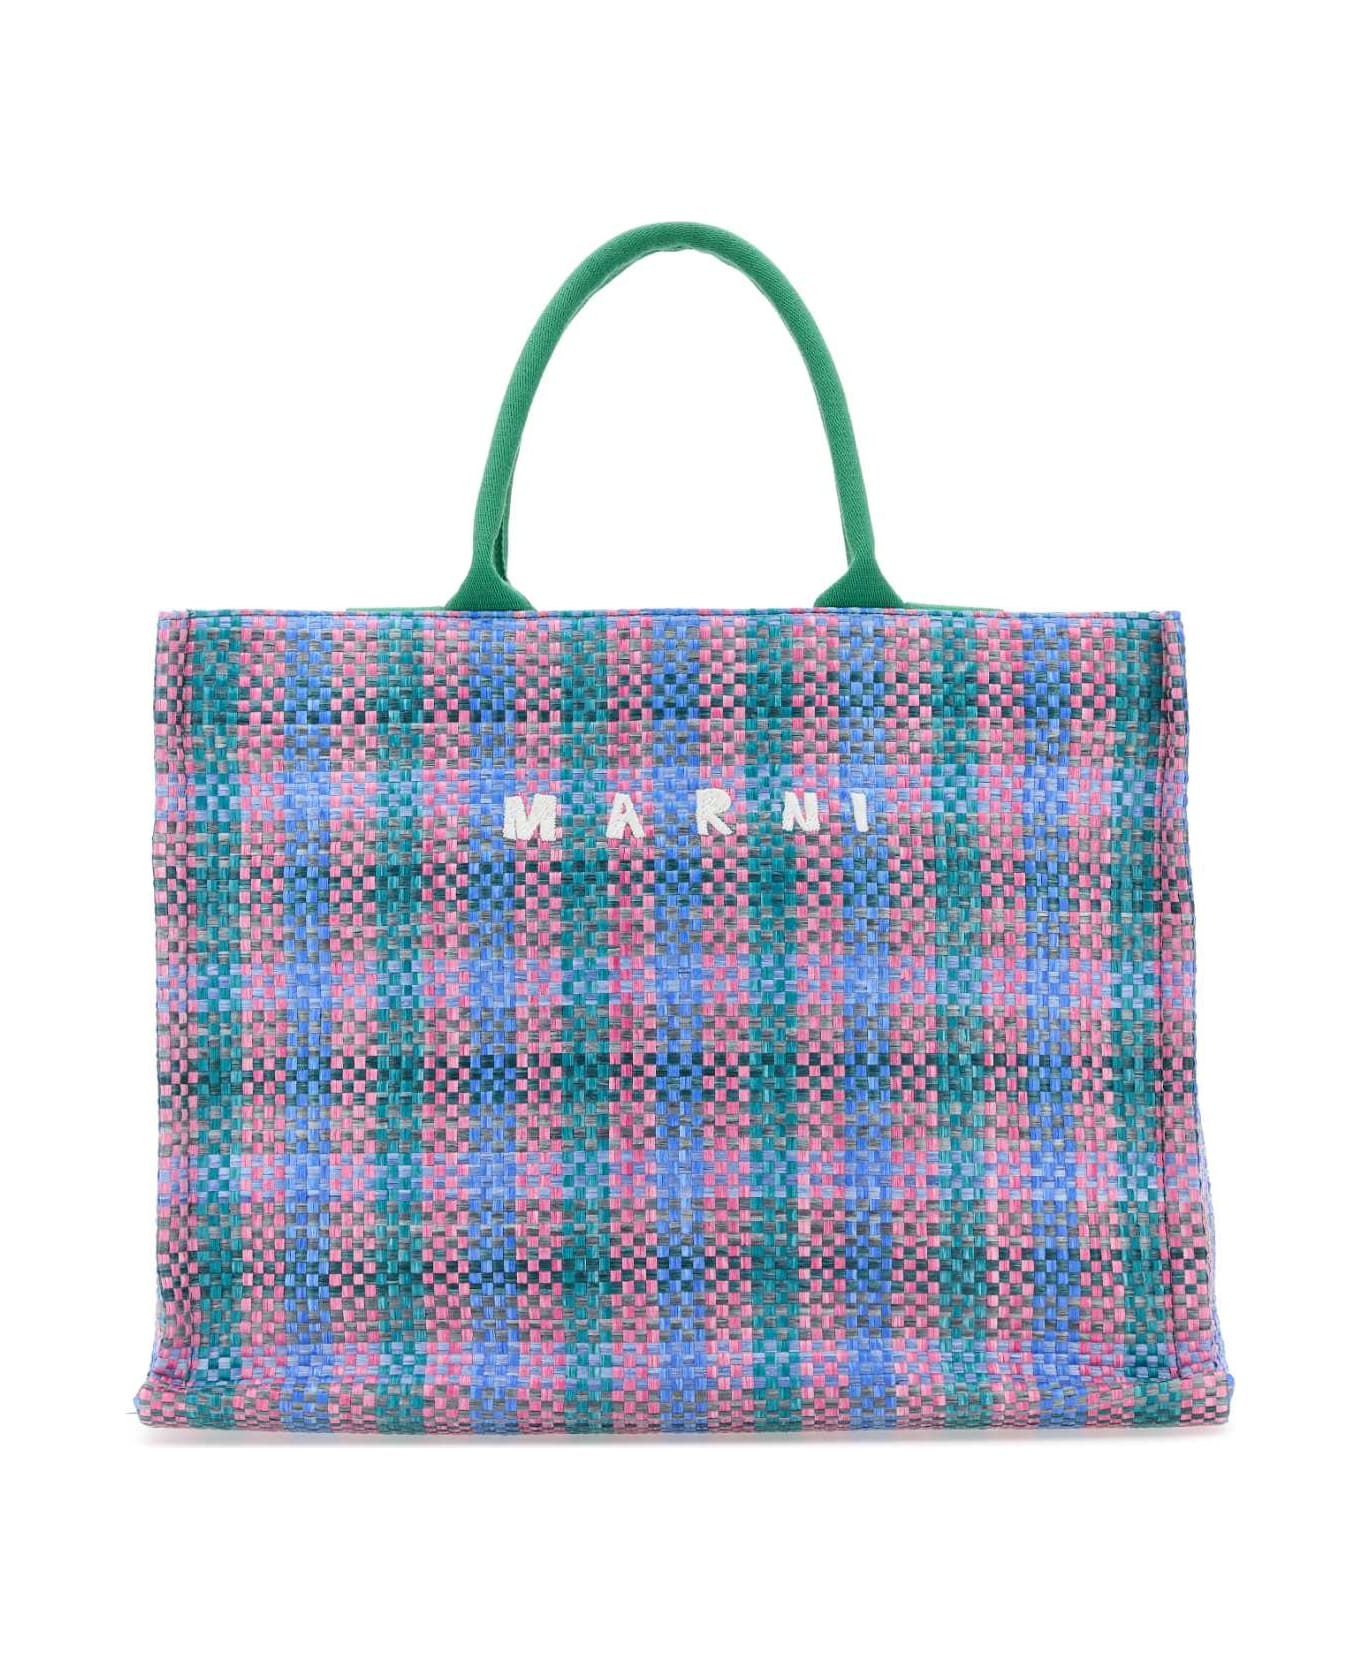 Marni Multicolor Raffia Big Shopping Bag - GREENFUCHSIACYPRESS